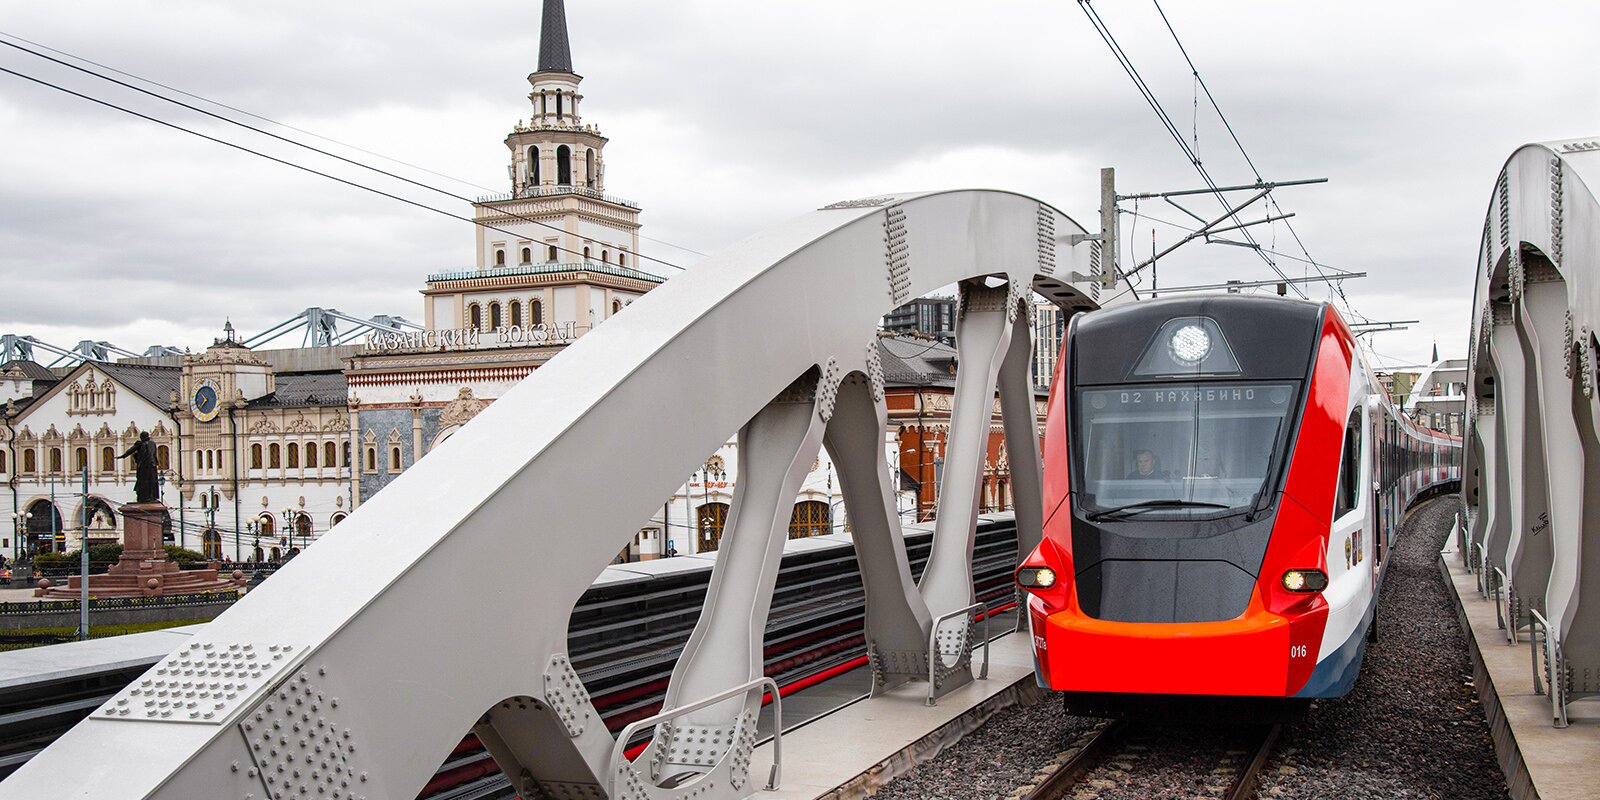 Уже 17 декабря поезда не будут останавливаться на Площади трех вокзалов. Фото: сайт мэра Москвы